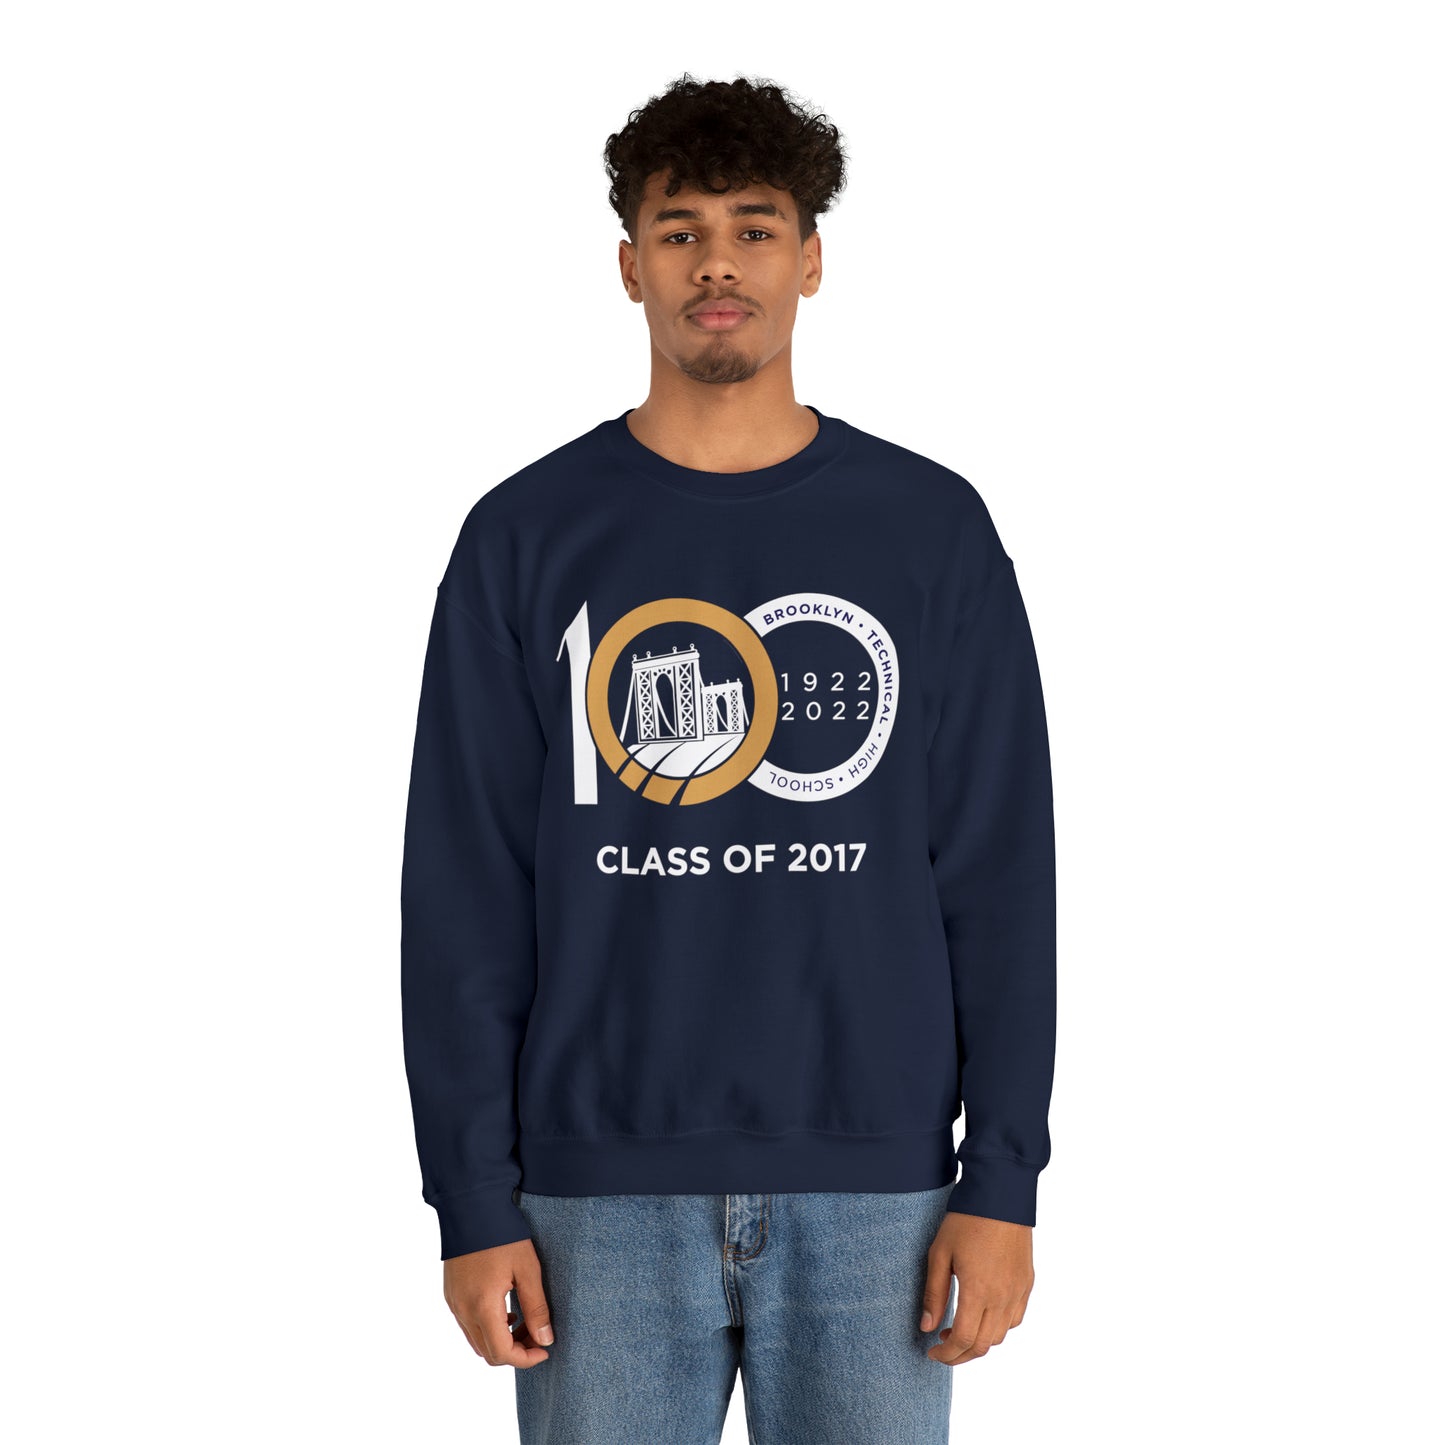 Centennial - Men's Heavy Blend Crewneck Sweatshirt - Class Of 2017